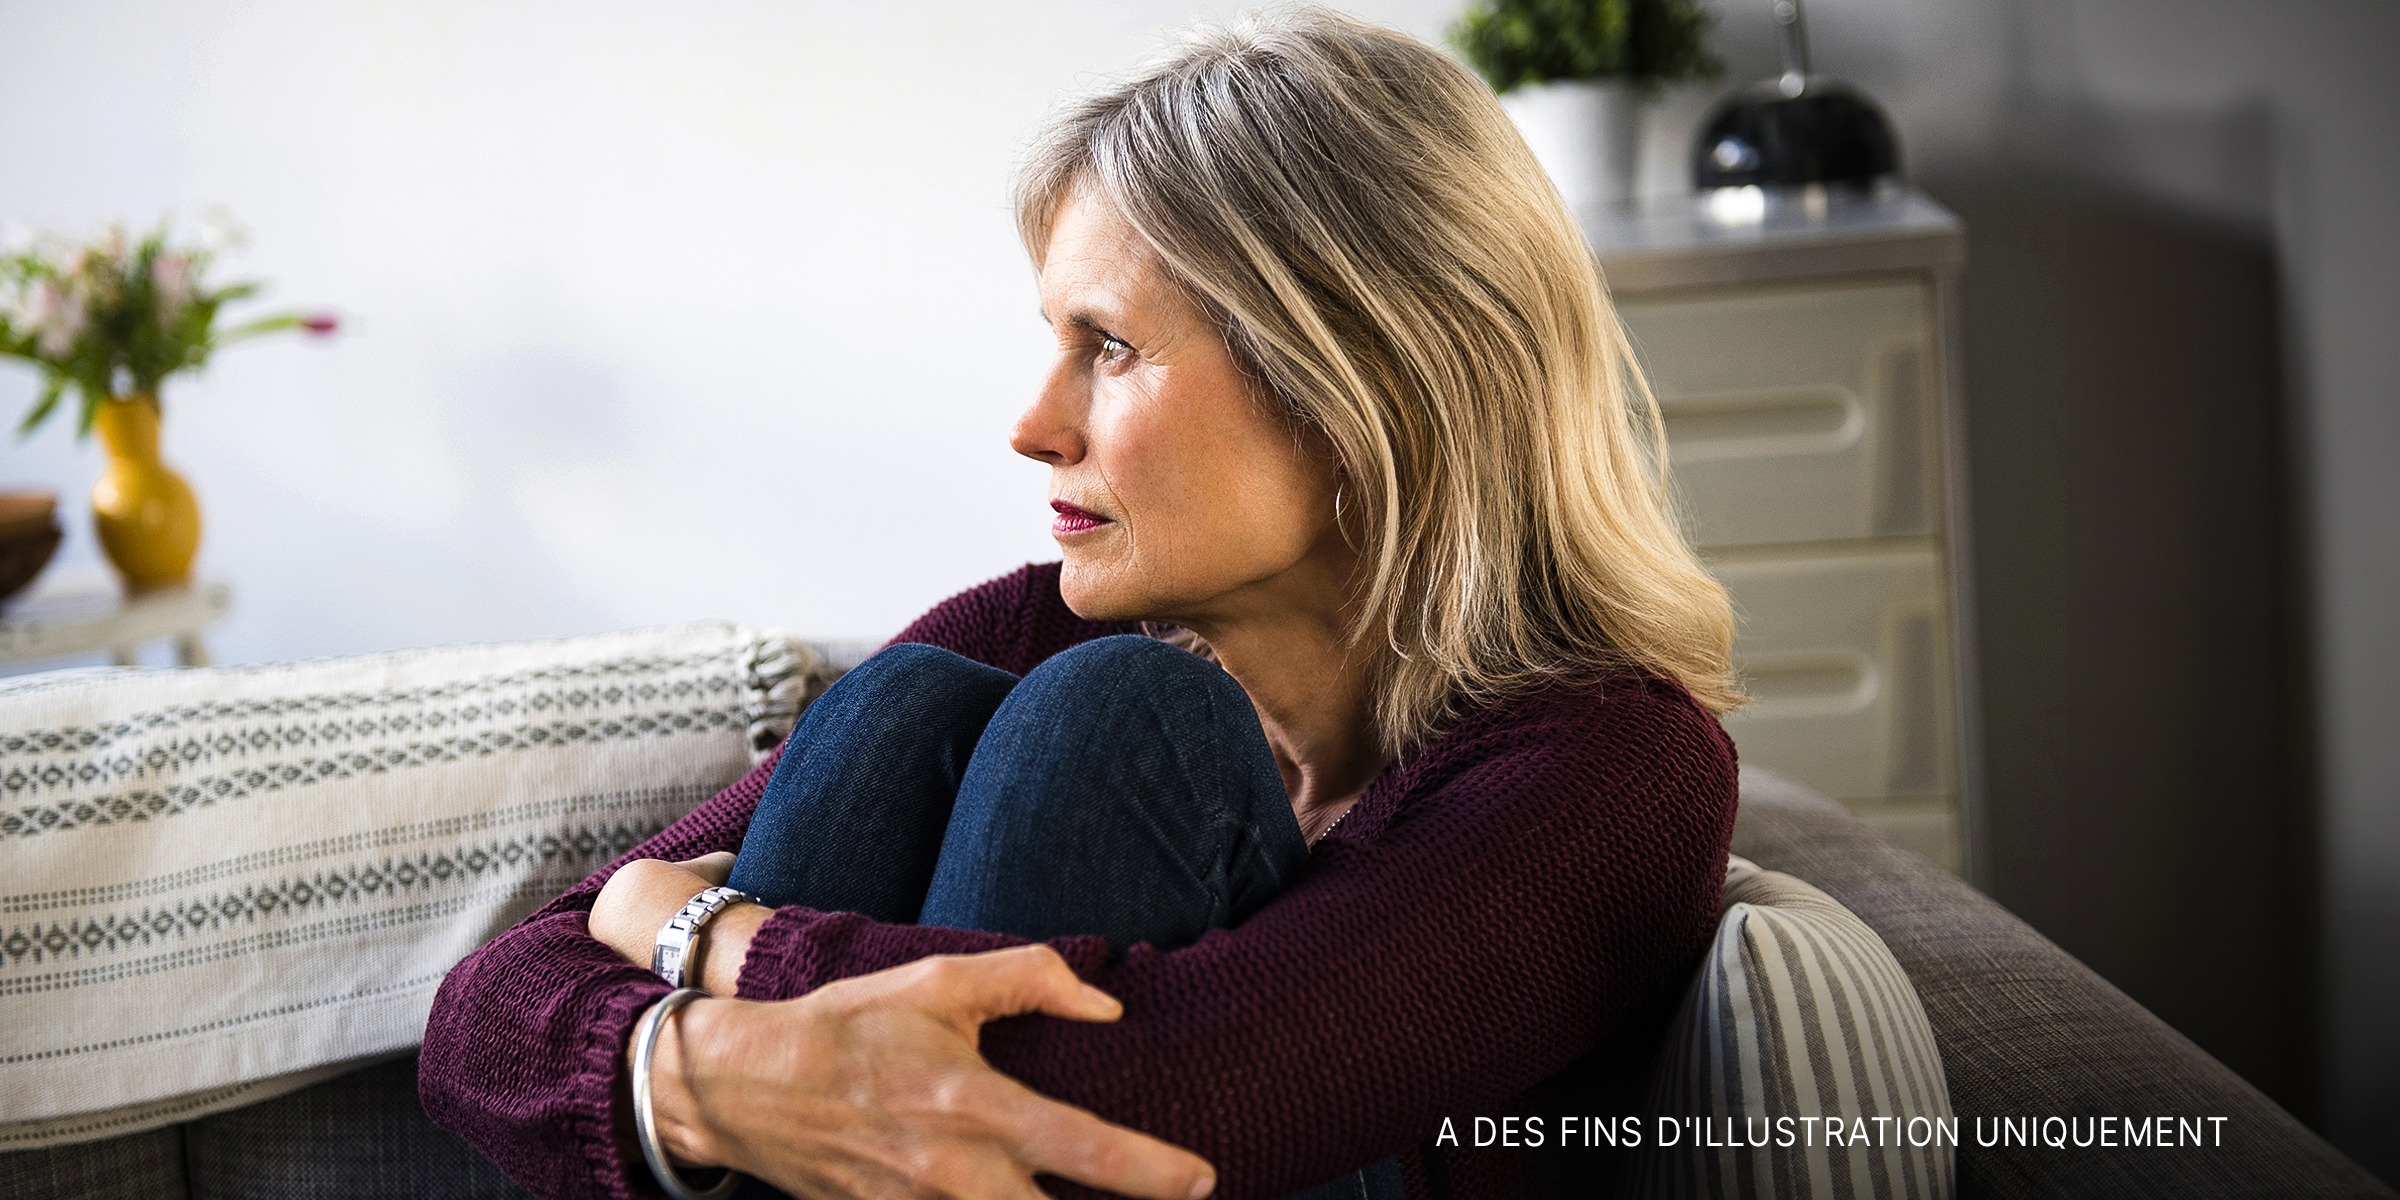 Une femme assise sur le canapé, l'air triste | Source : Shutterstock